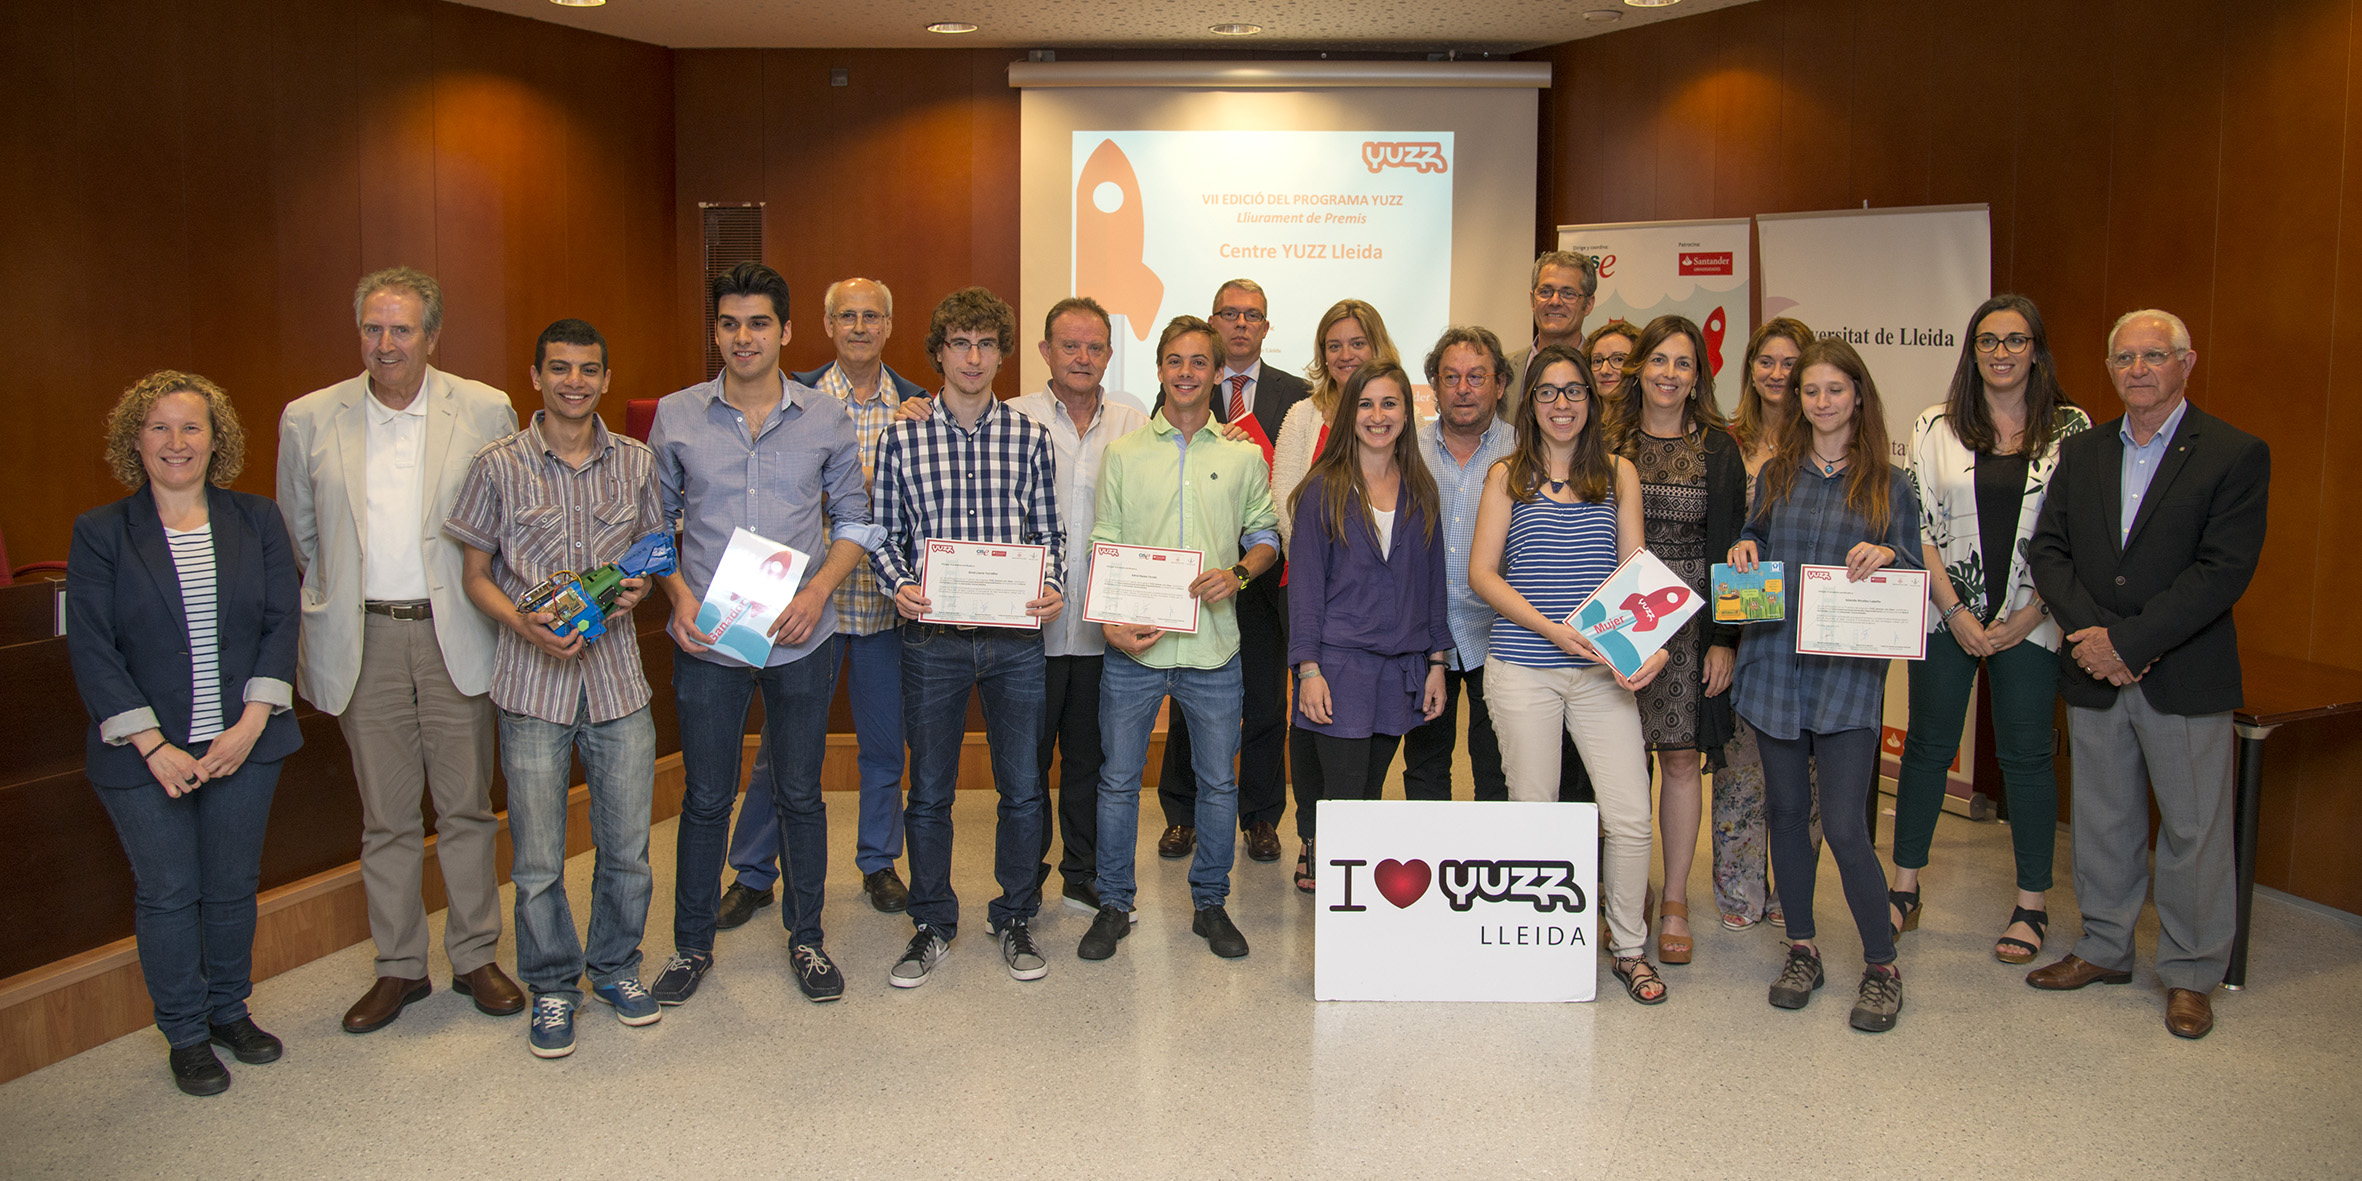 Premi YUZZ per a un projecte de pròtesis biòniques impreses en 3D